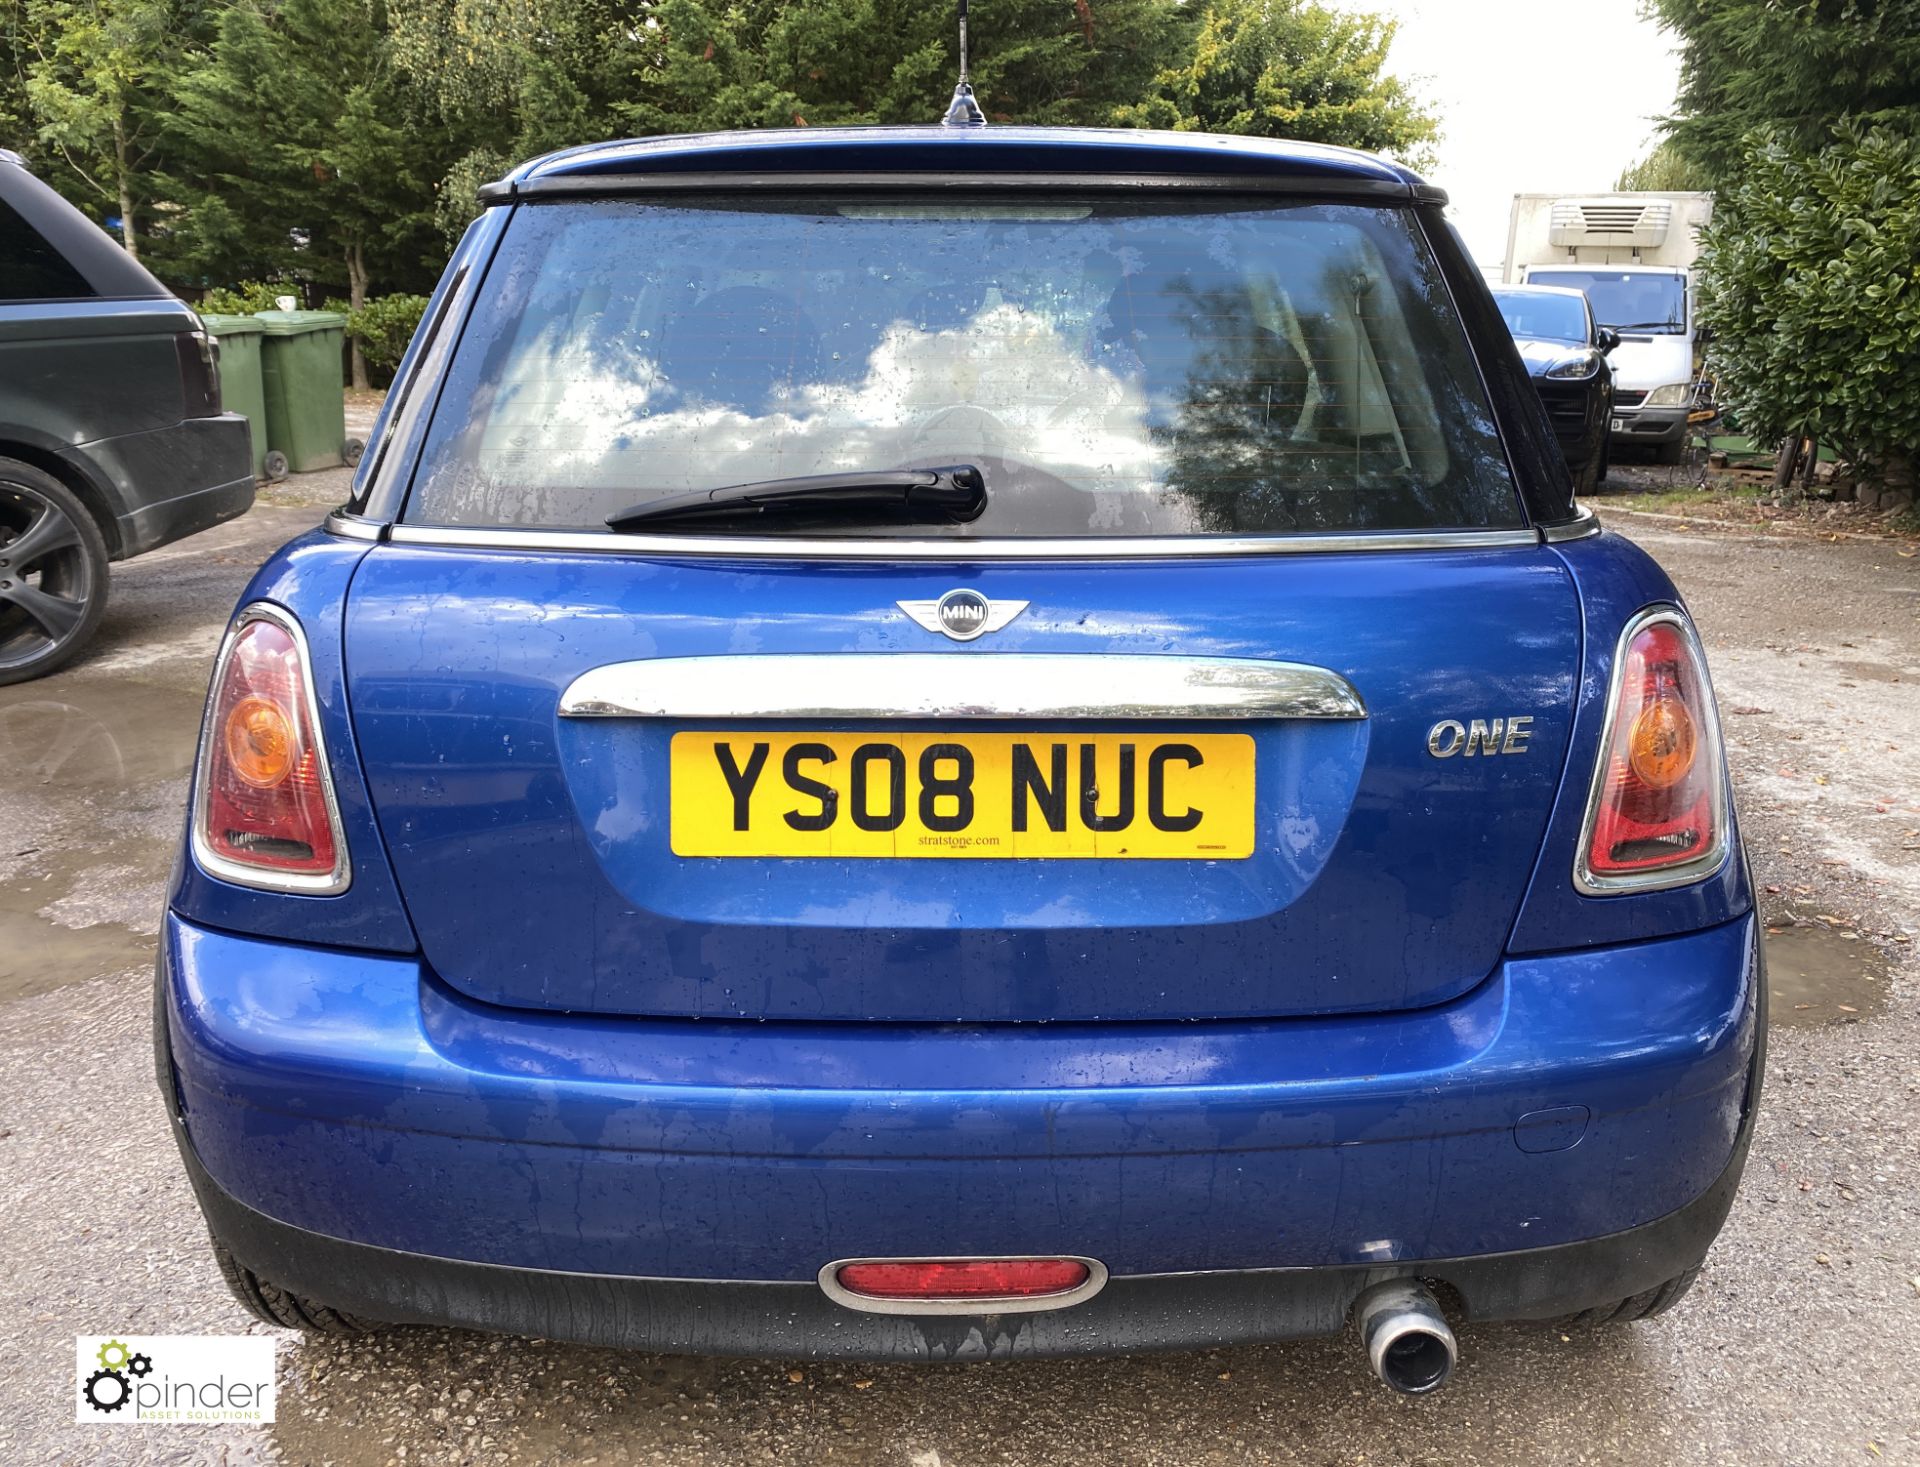 Mini One 1.4 petrol 3-door Hatchback, registration YS08 NUC, date of registration 10 June 2008, - Image 6 of 12